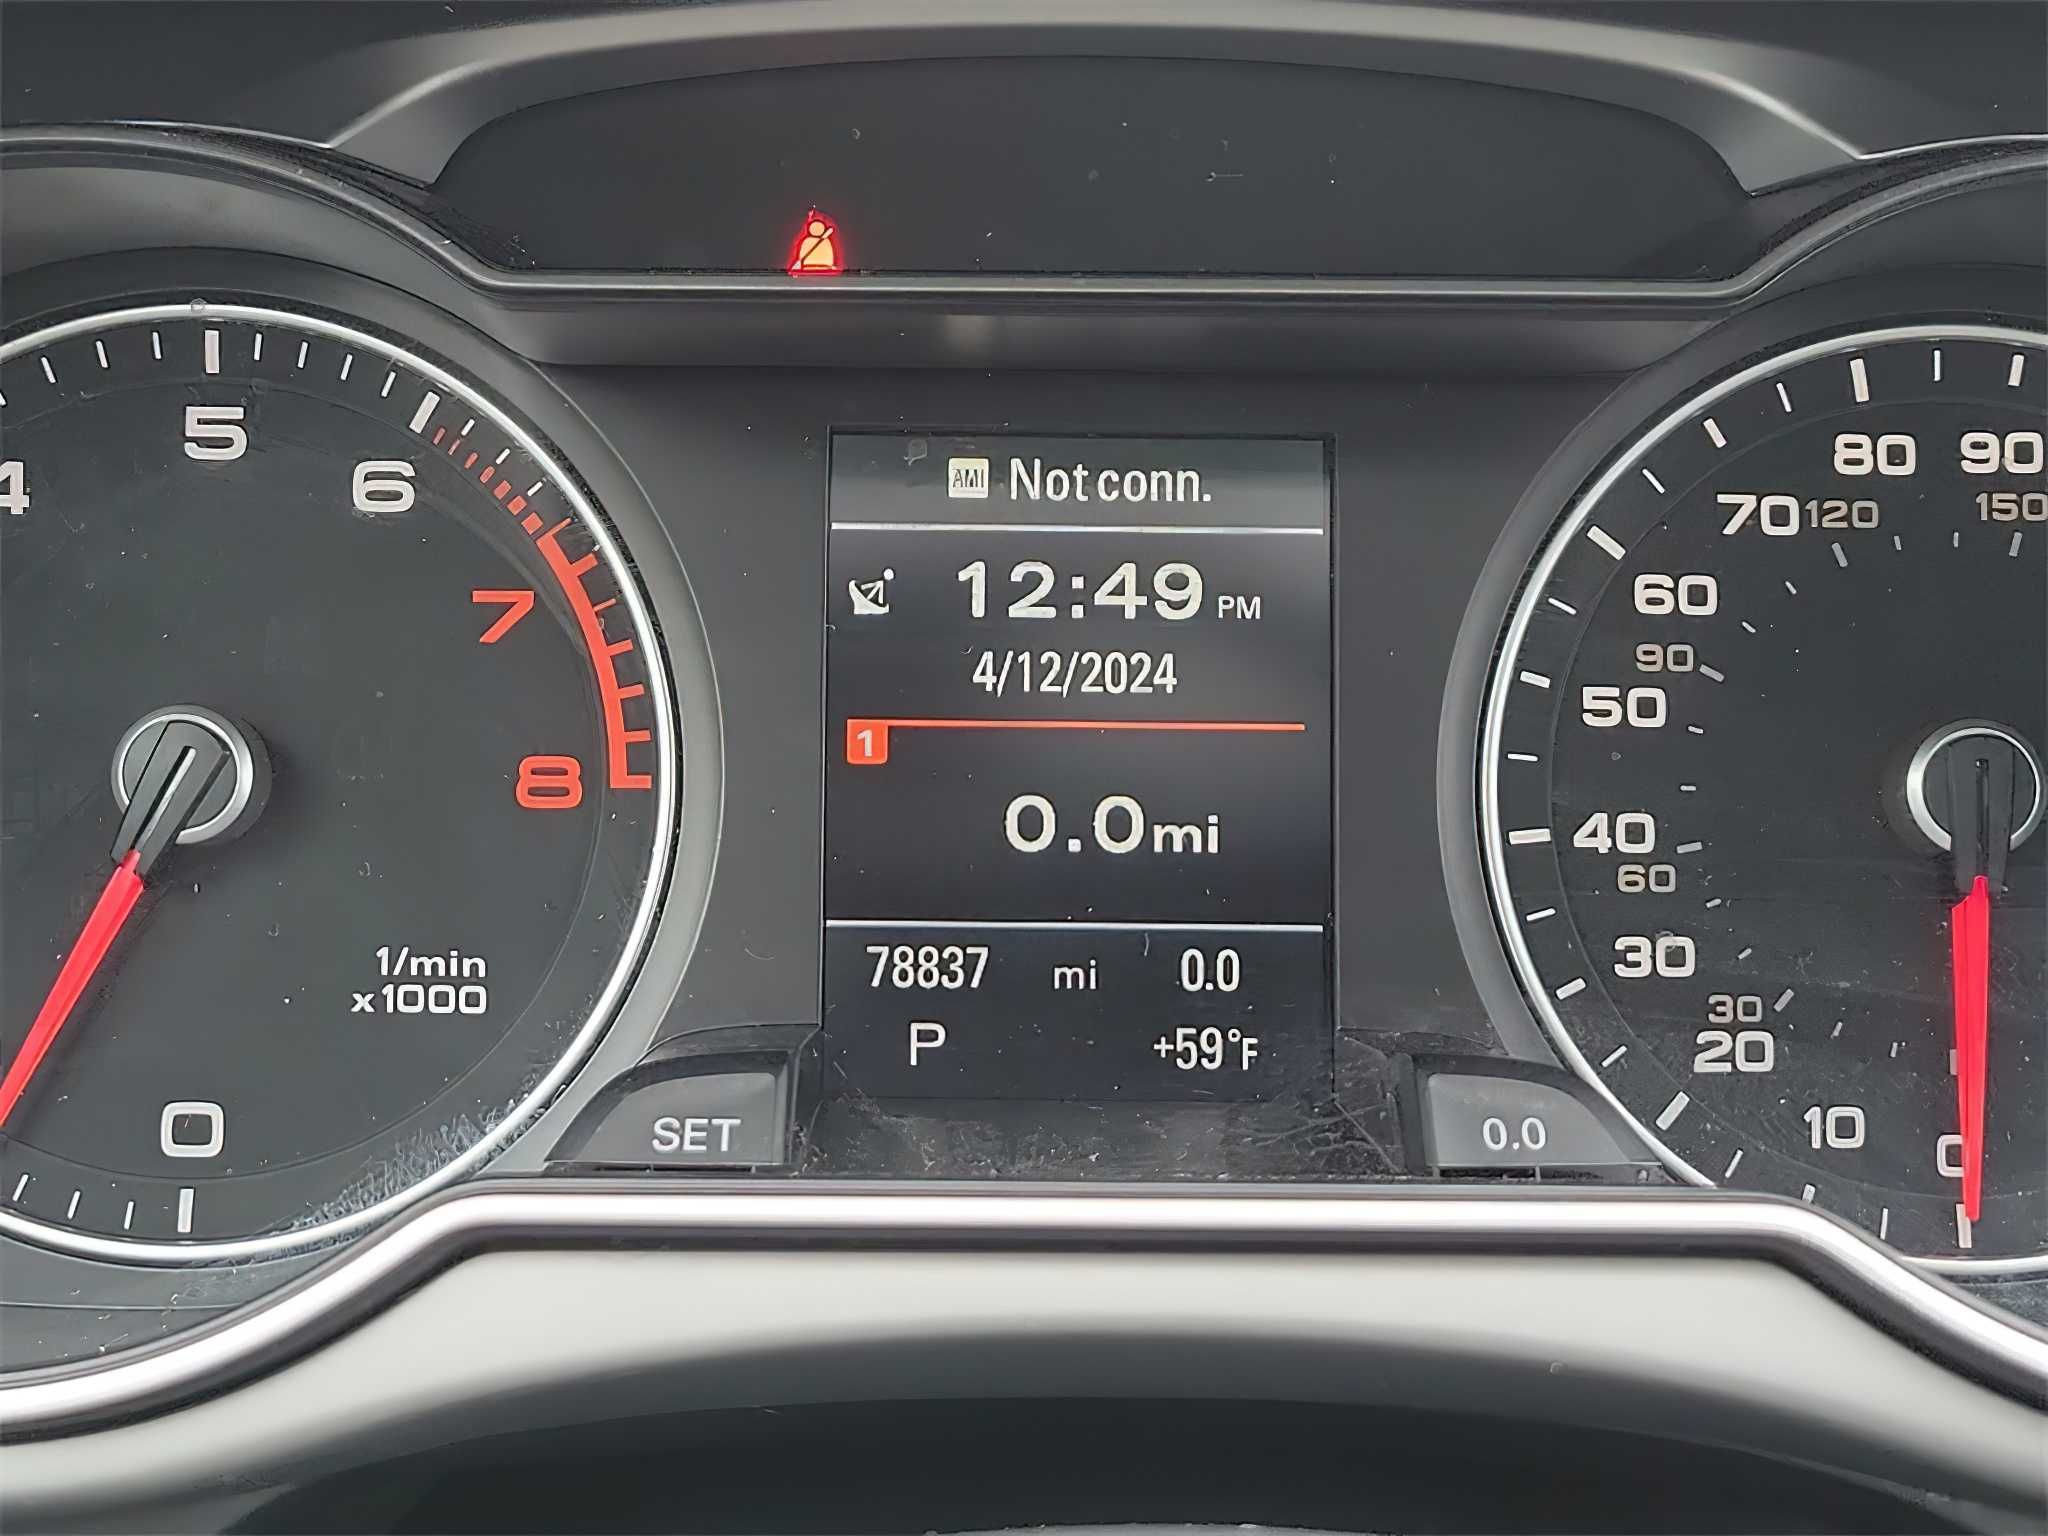 Audi A4 2015 Gray